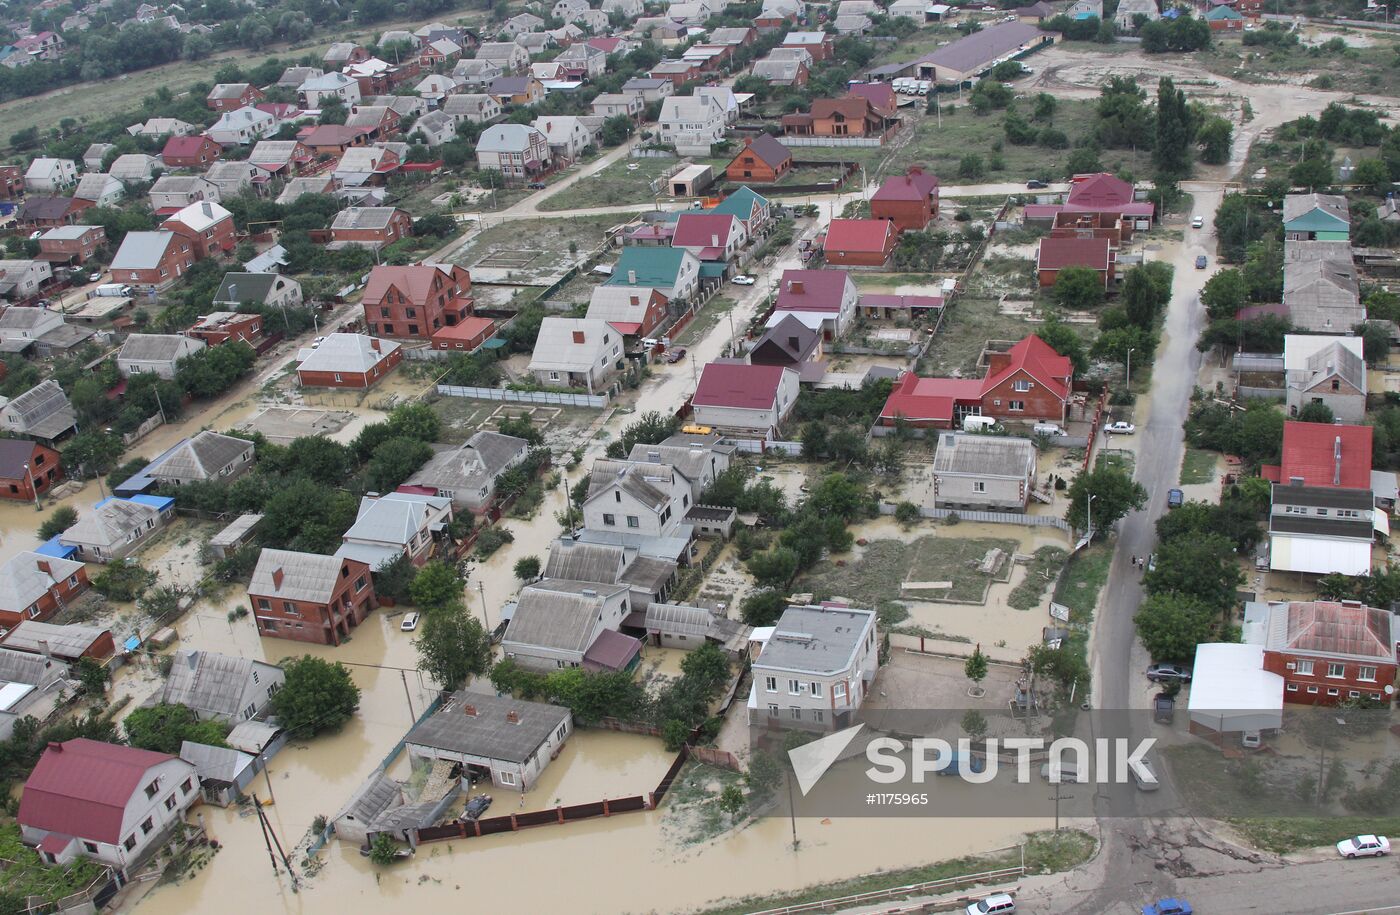 Flood aftermath in Krasnodar Territory